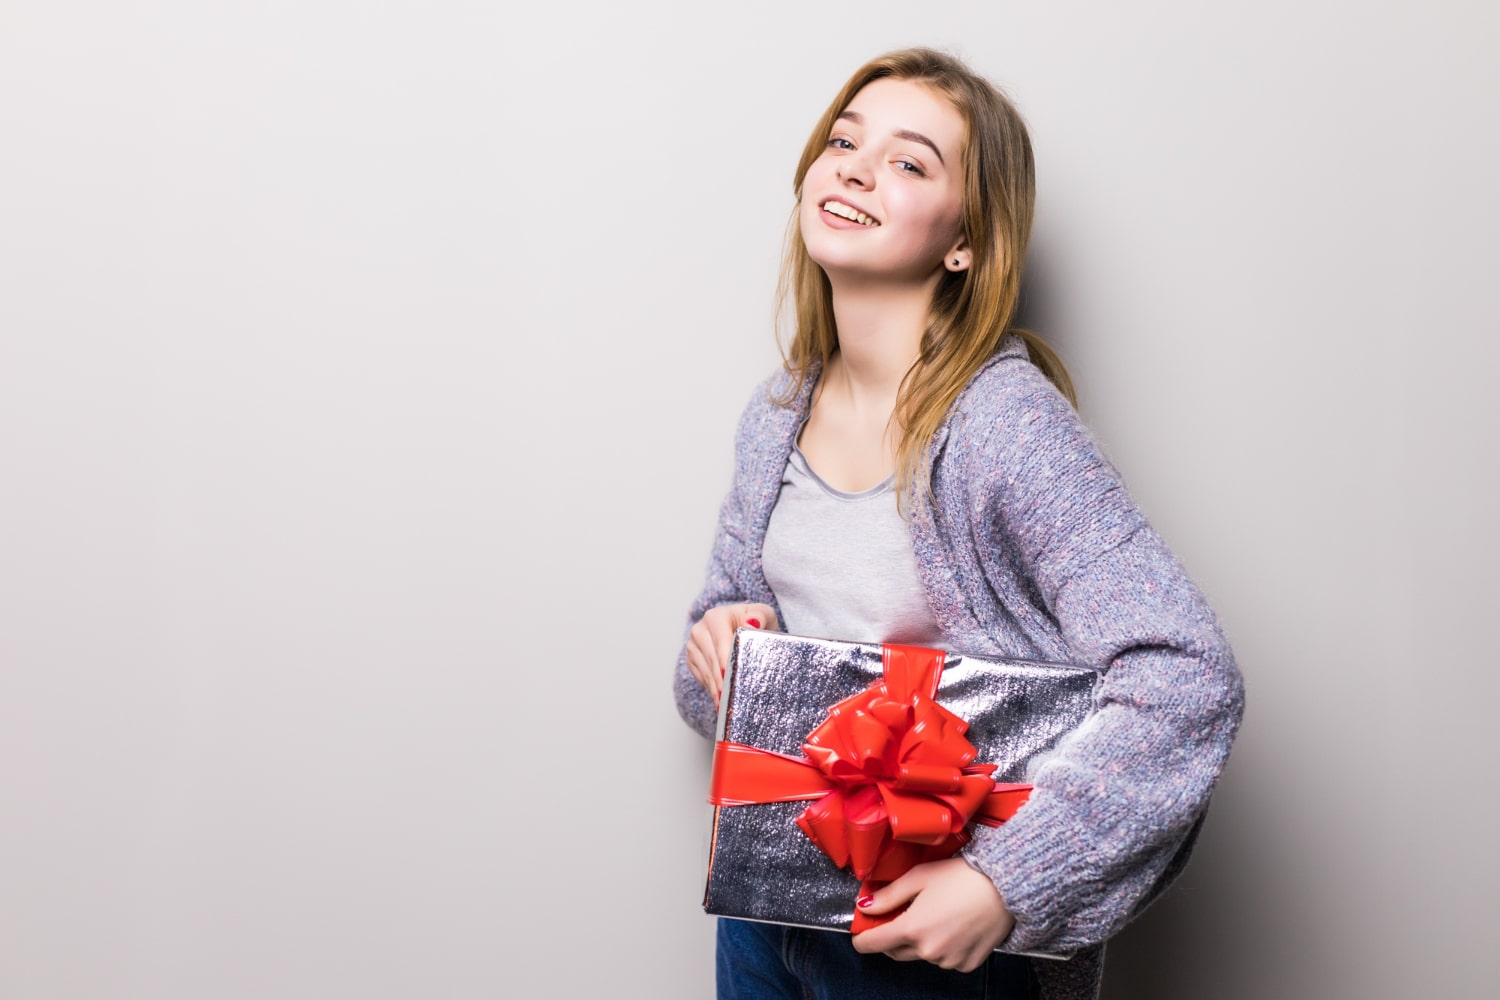 ijs Huh Uitbreiding Cadeaus voor 14 jarige meiden; wat geef jij cadeau? | 123 Cadeau idee.nl;  Cadeautips voor iedereen en alle gelegenheden!